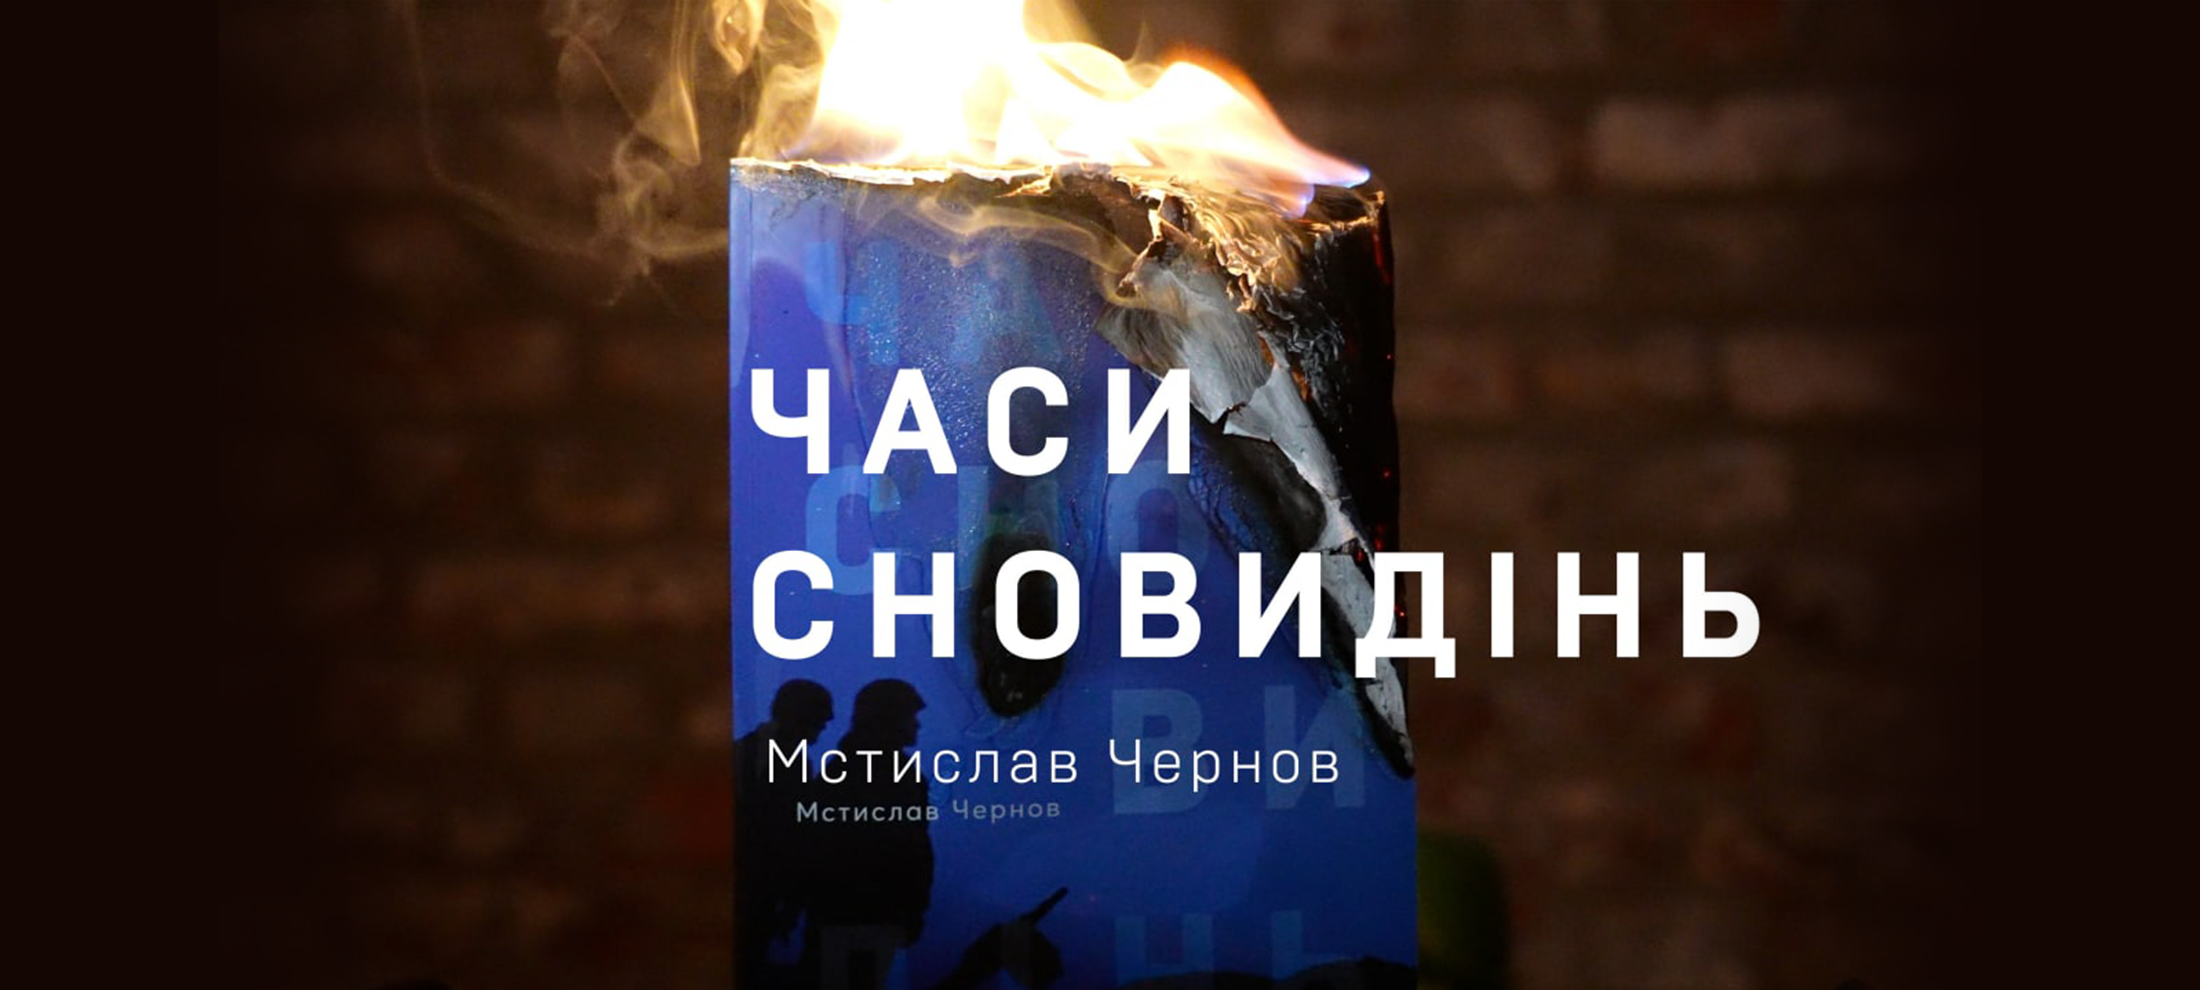 Мстислав Чернов: «Часи сновидінь» — психологічний роман-загадка, яку читач повинен розгадати сам» 0